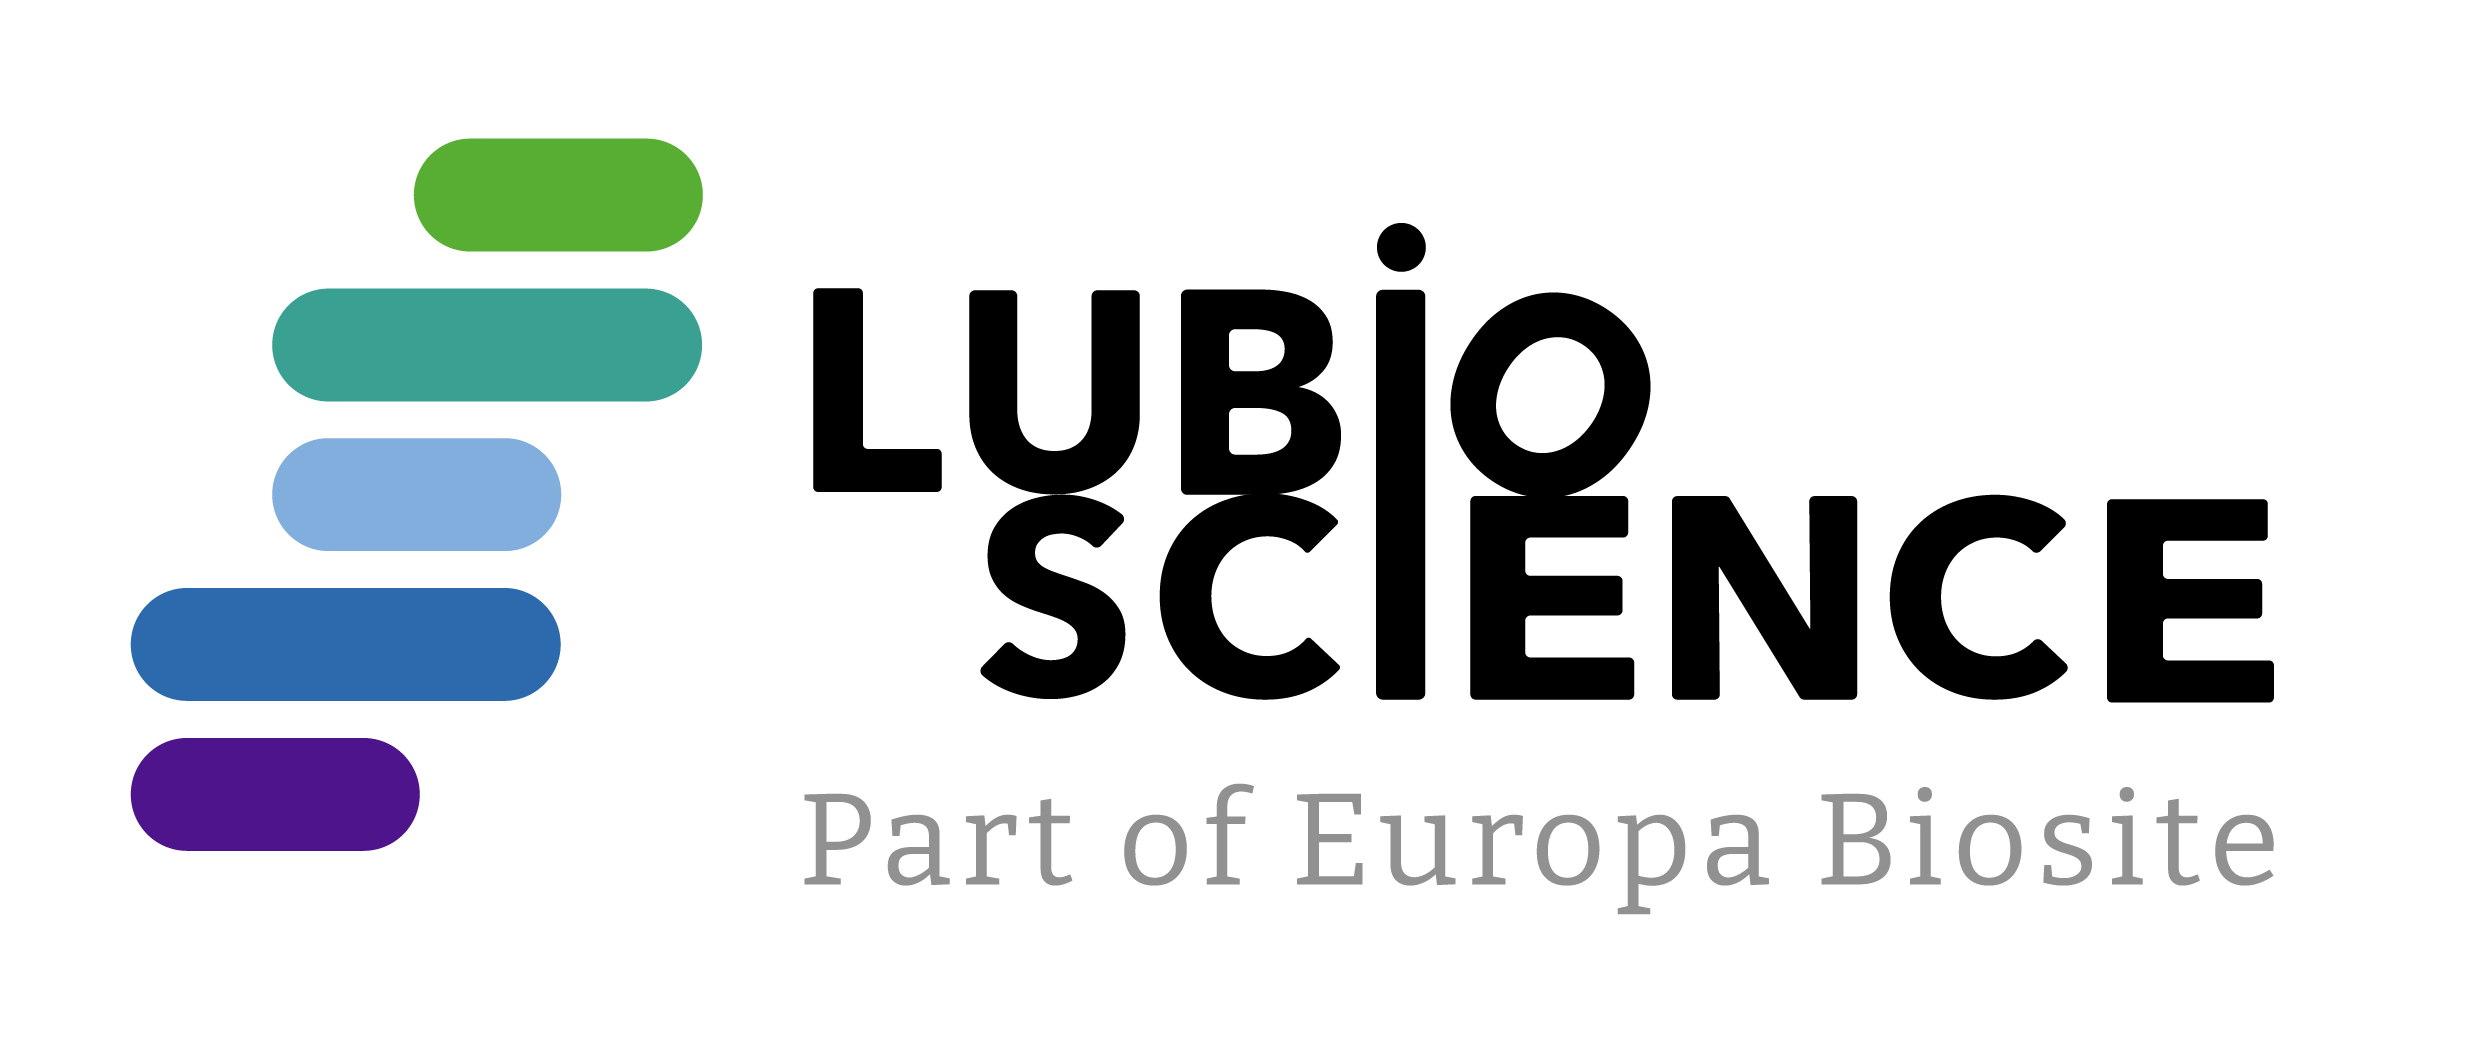 LubioScience logo new